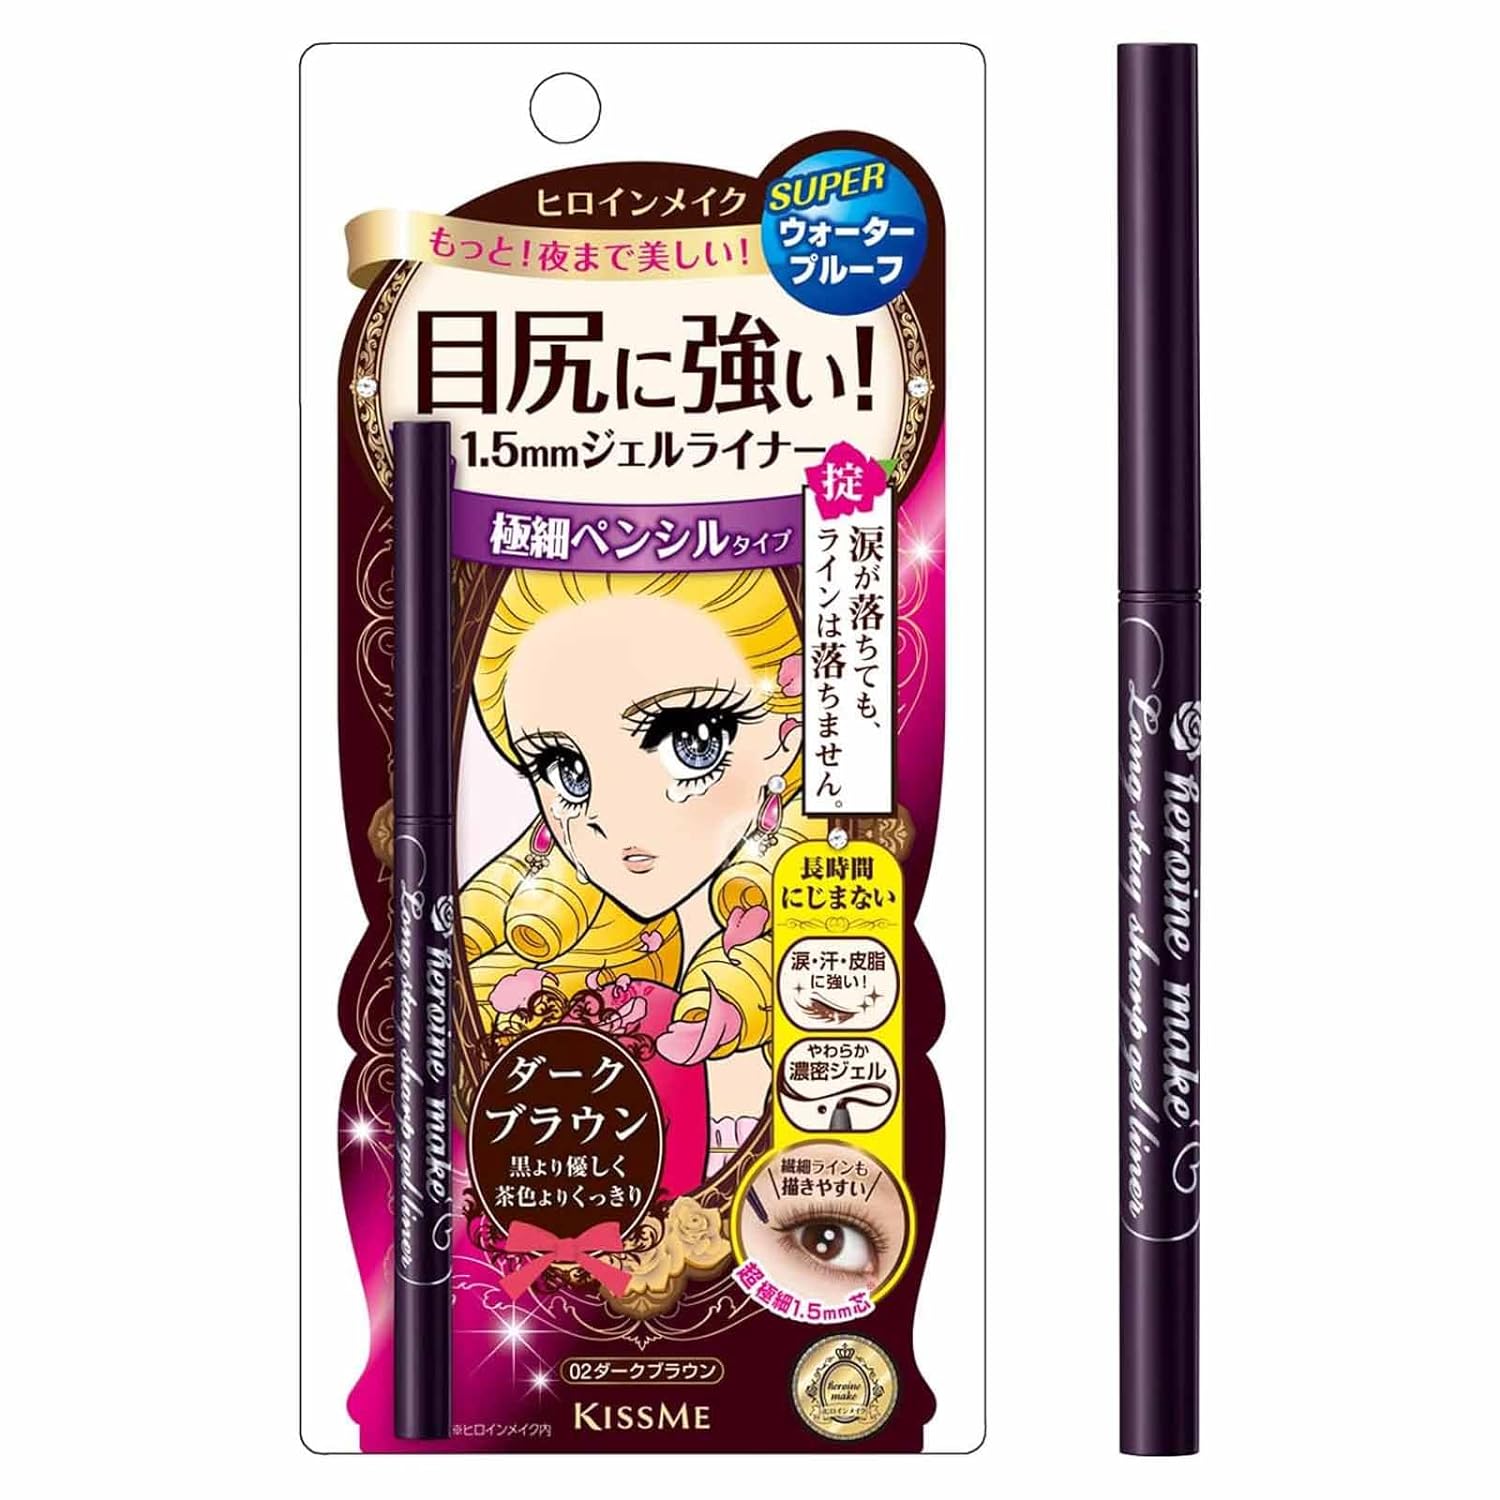 Heroine Make by KISSME Long Stay Sharp Gel Waterproof Eyeliner Pen for Eye Liner Makeup, 02 Dark Brown